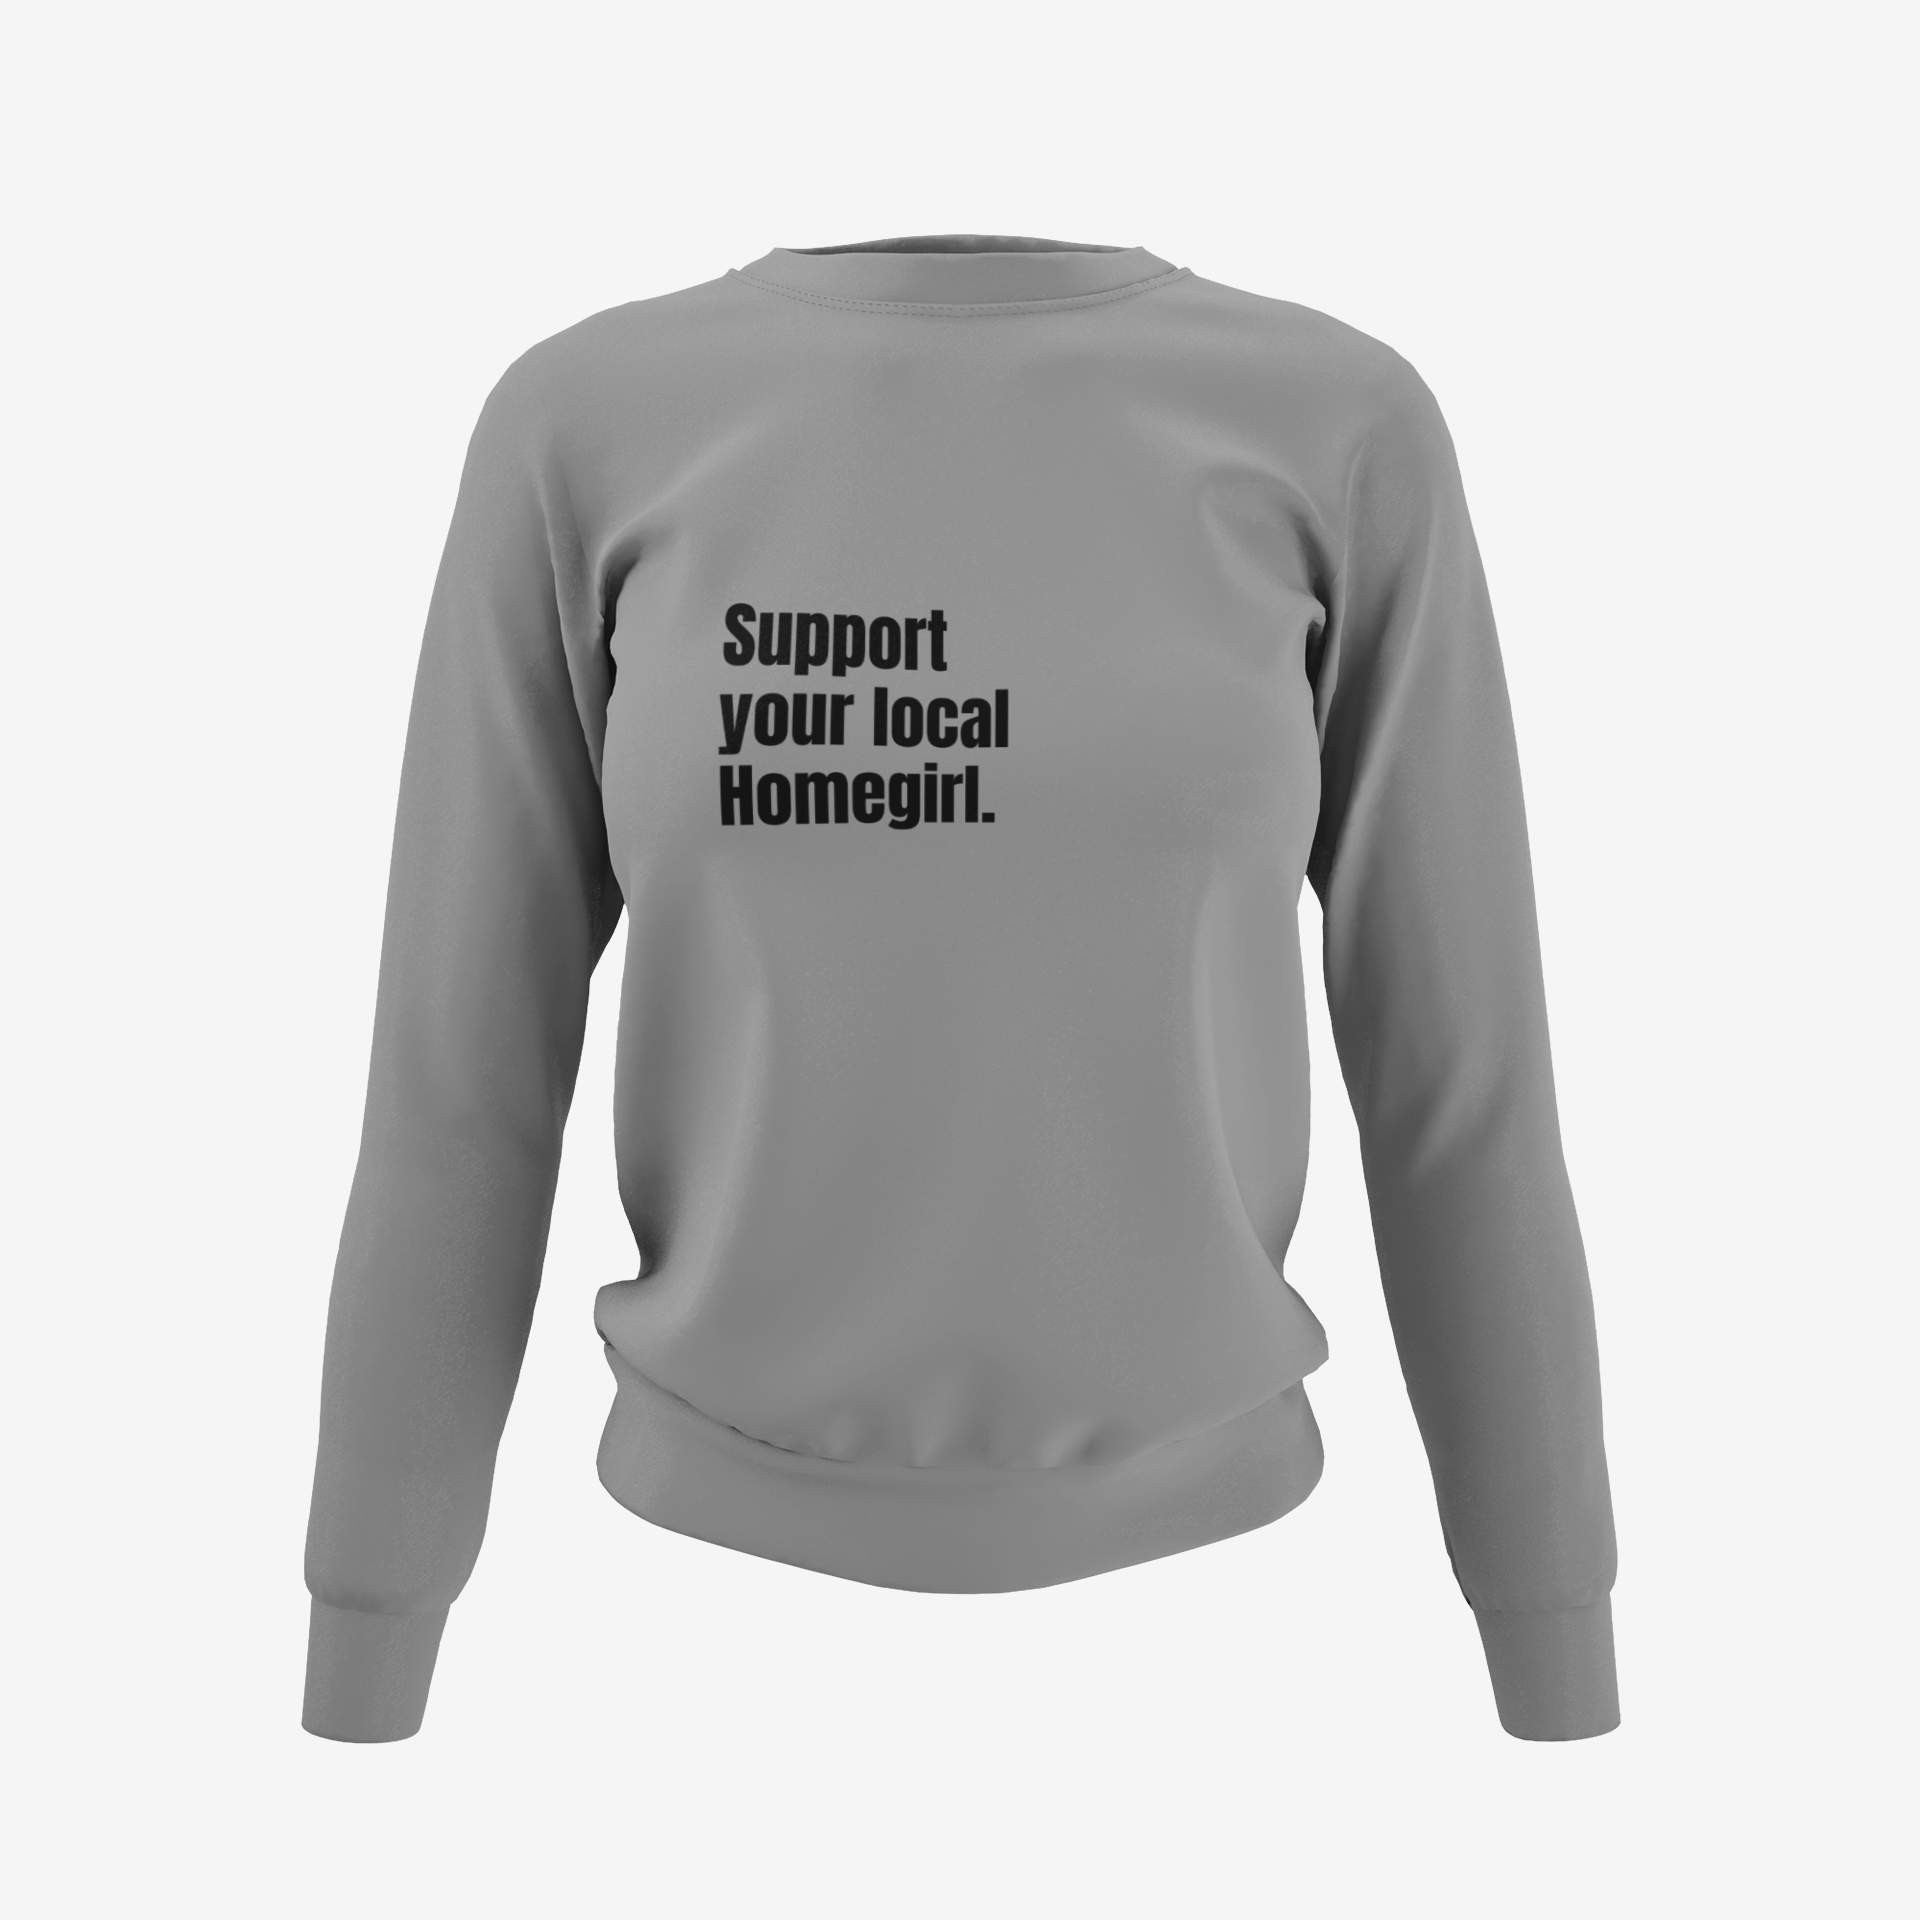 Local Homegirl Support Sweatshirt